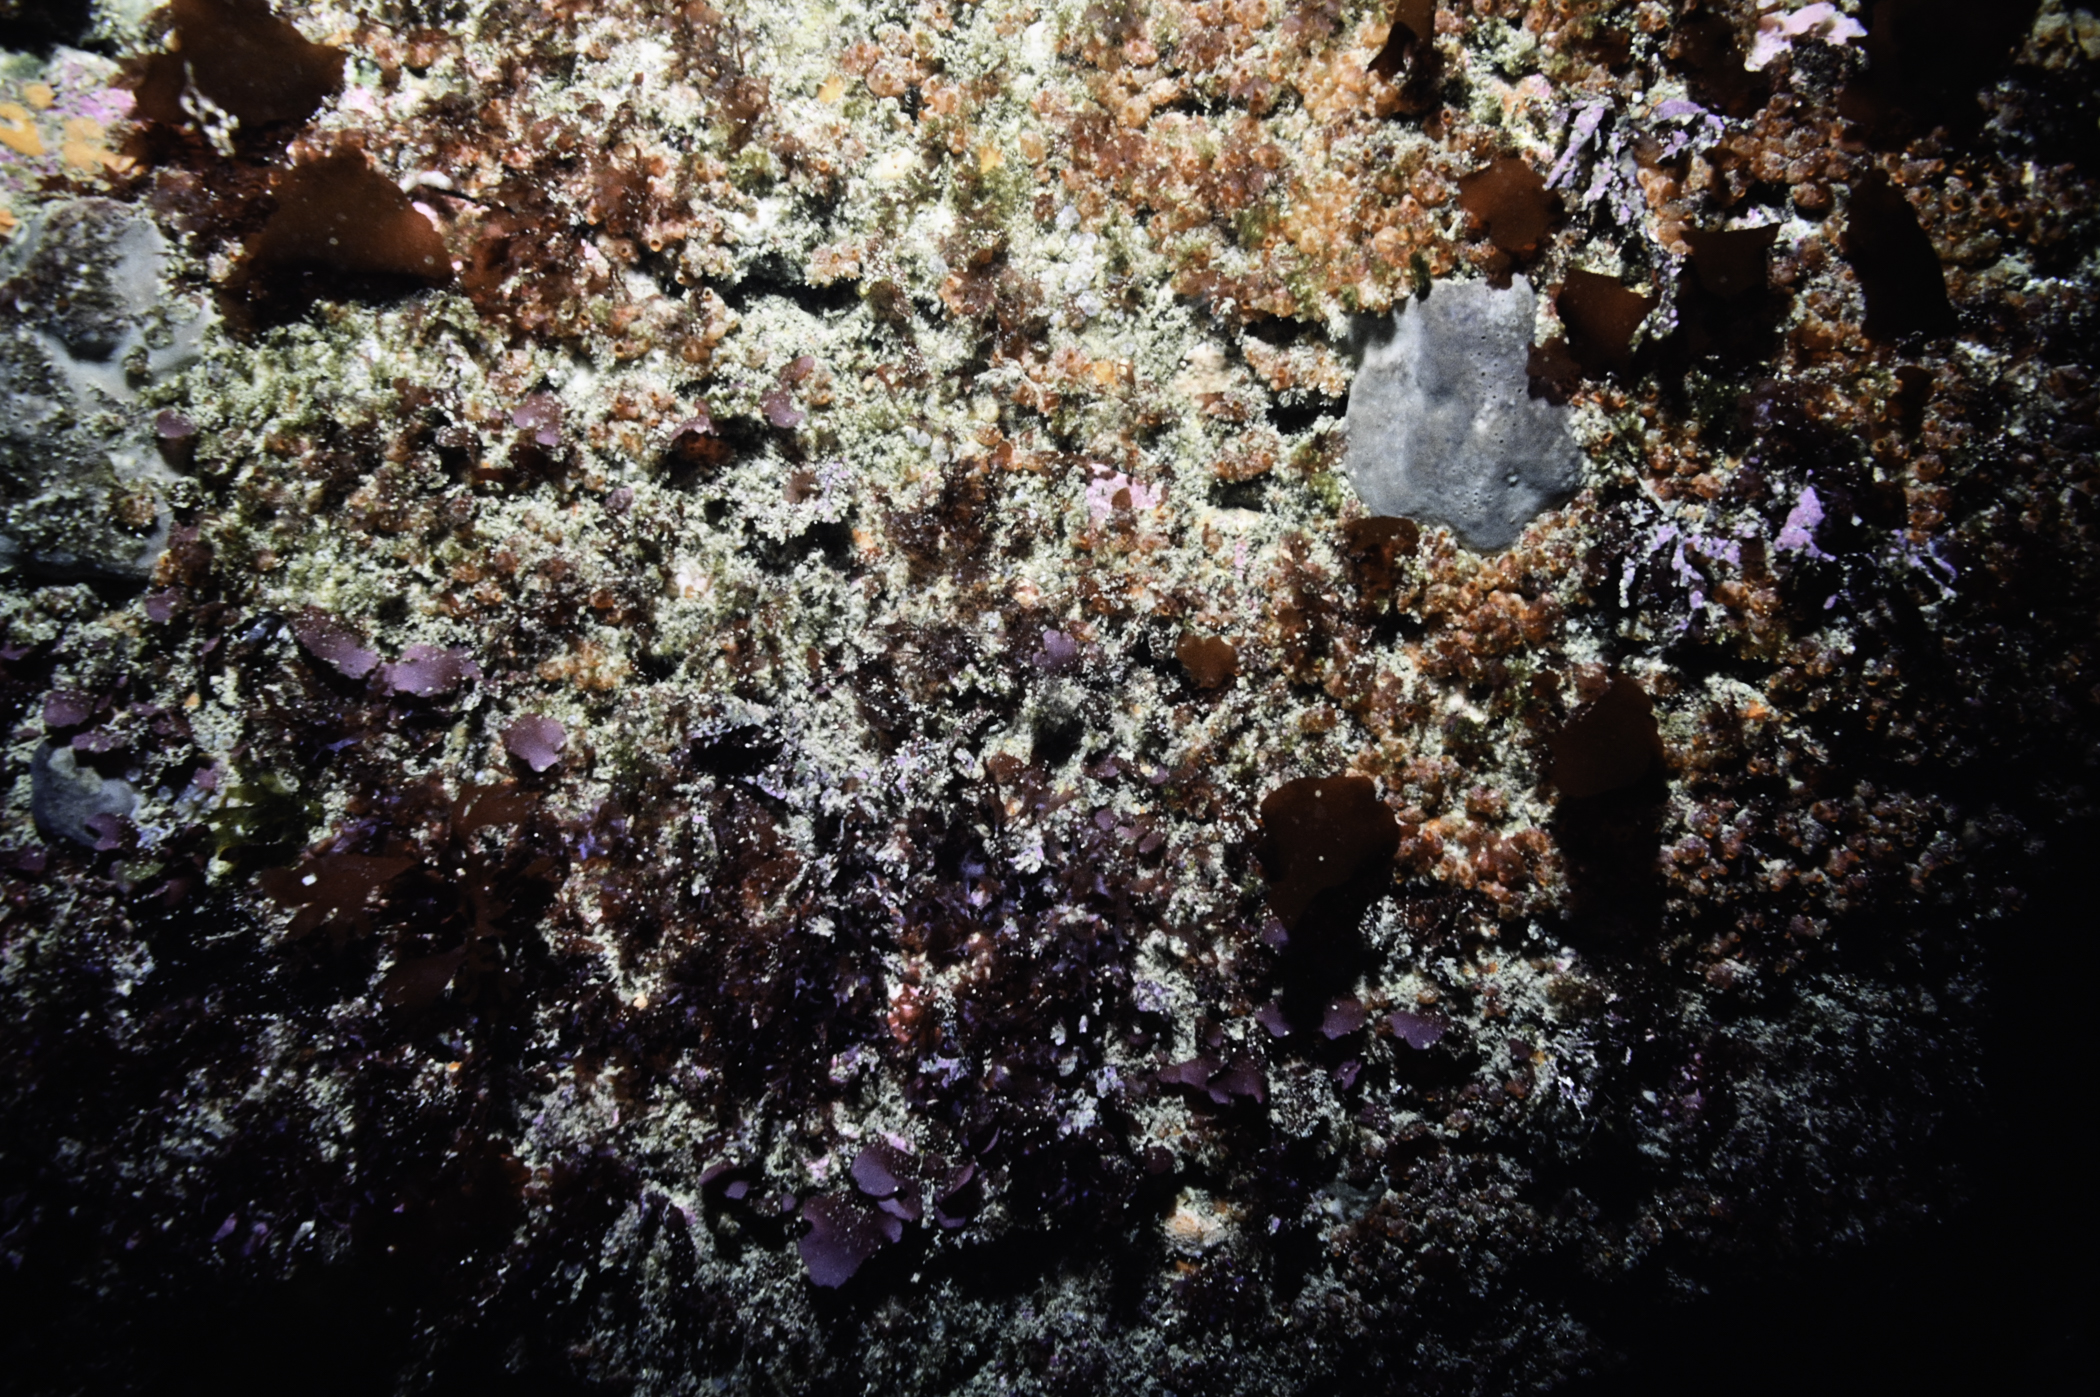 Pachymatisma johnstonia, Dendrodoa grossularia, Meredithia microphylla. Site: W of Farganlack Point, Rathlin Island. 